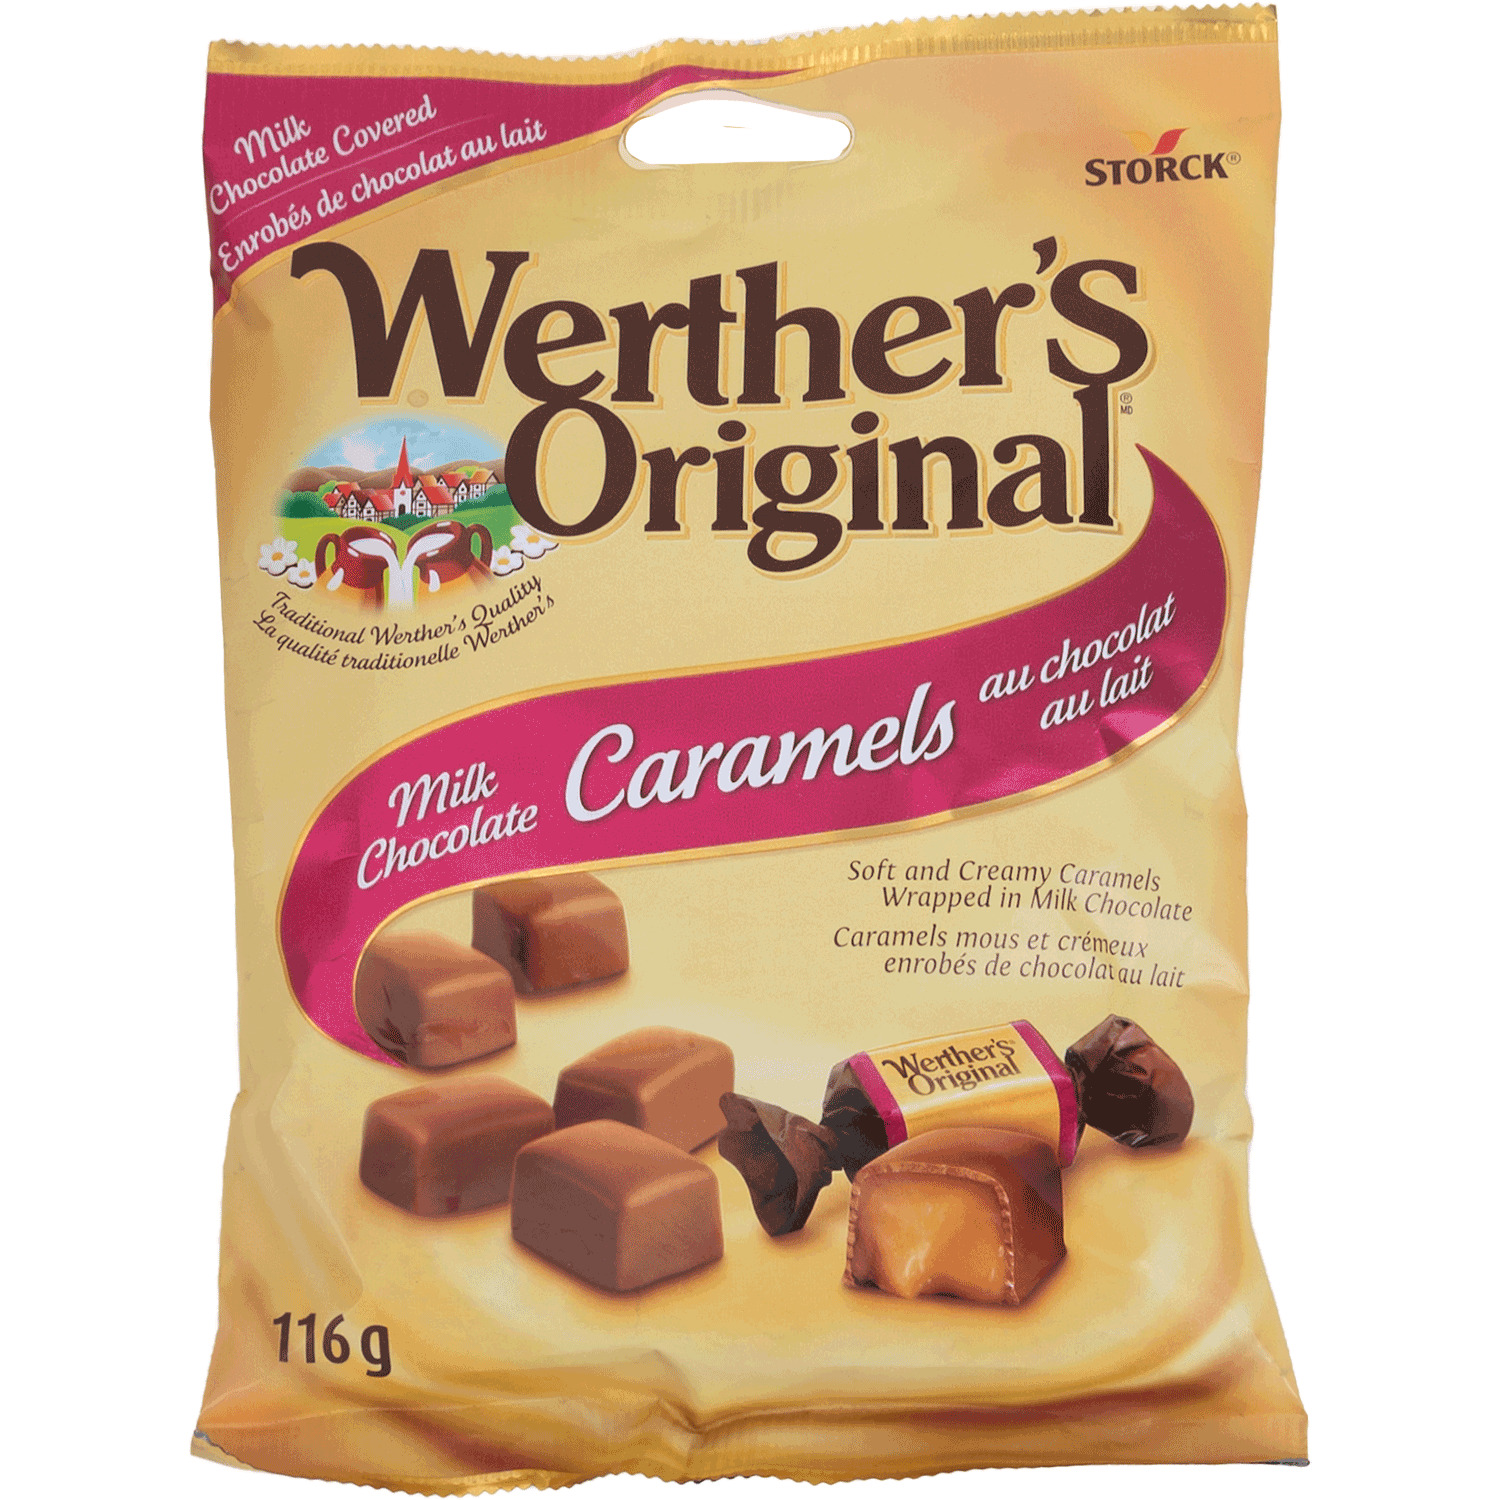 Werther's Original - Milk chocolate caramels, 116g